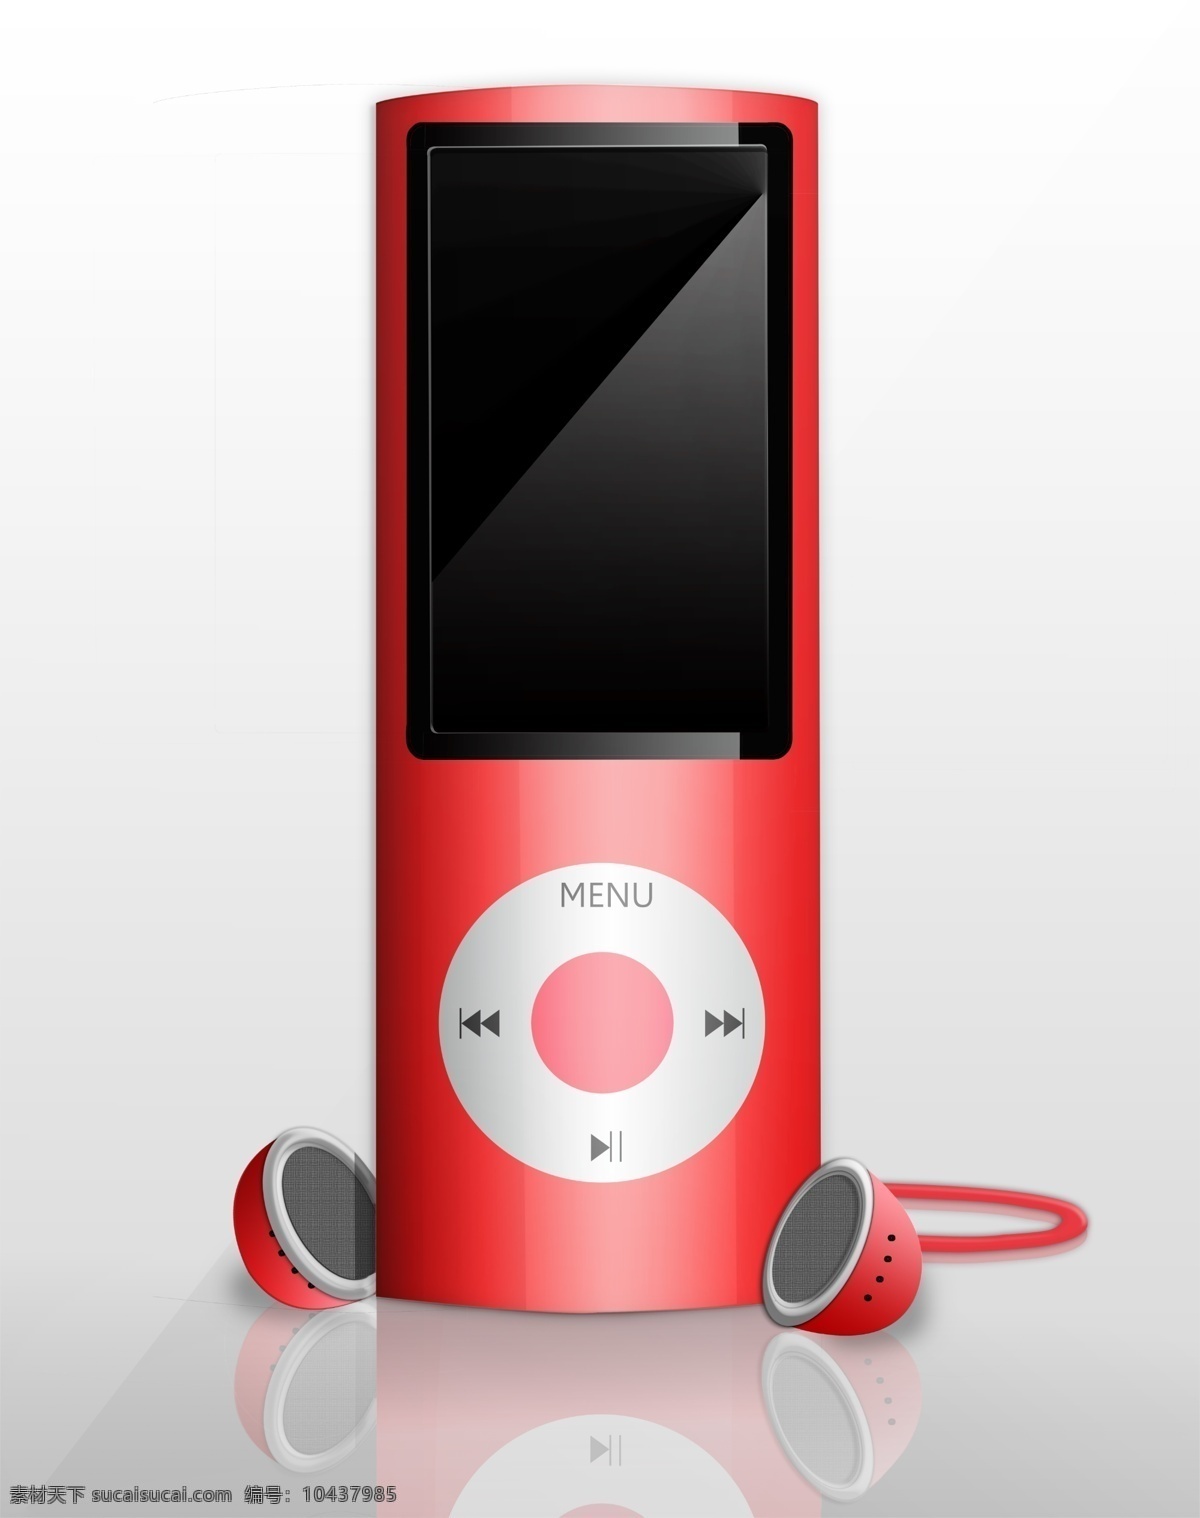 苹果 ipod 红色 mp4 mp3 电子产品 手绘设计制作 分层 白色